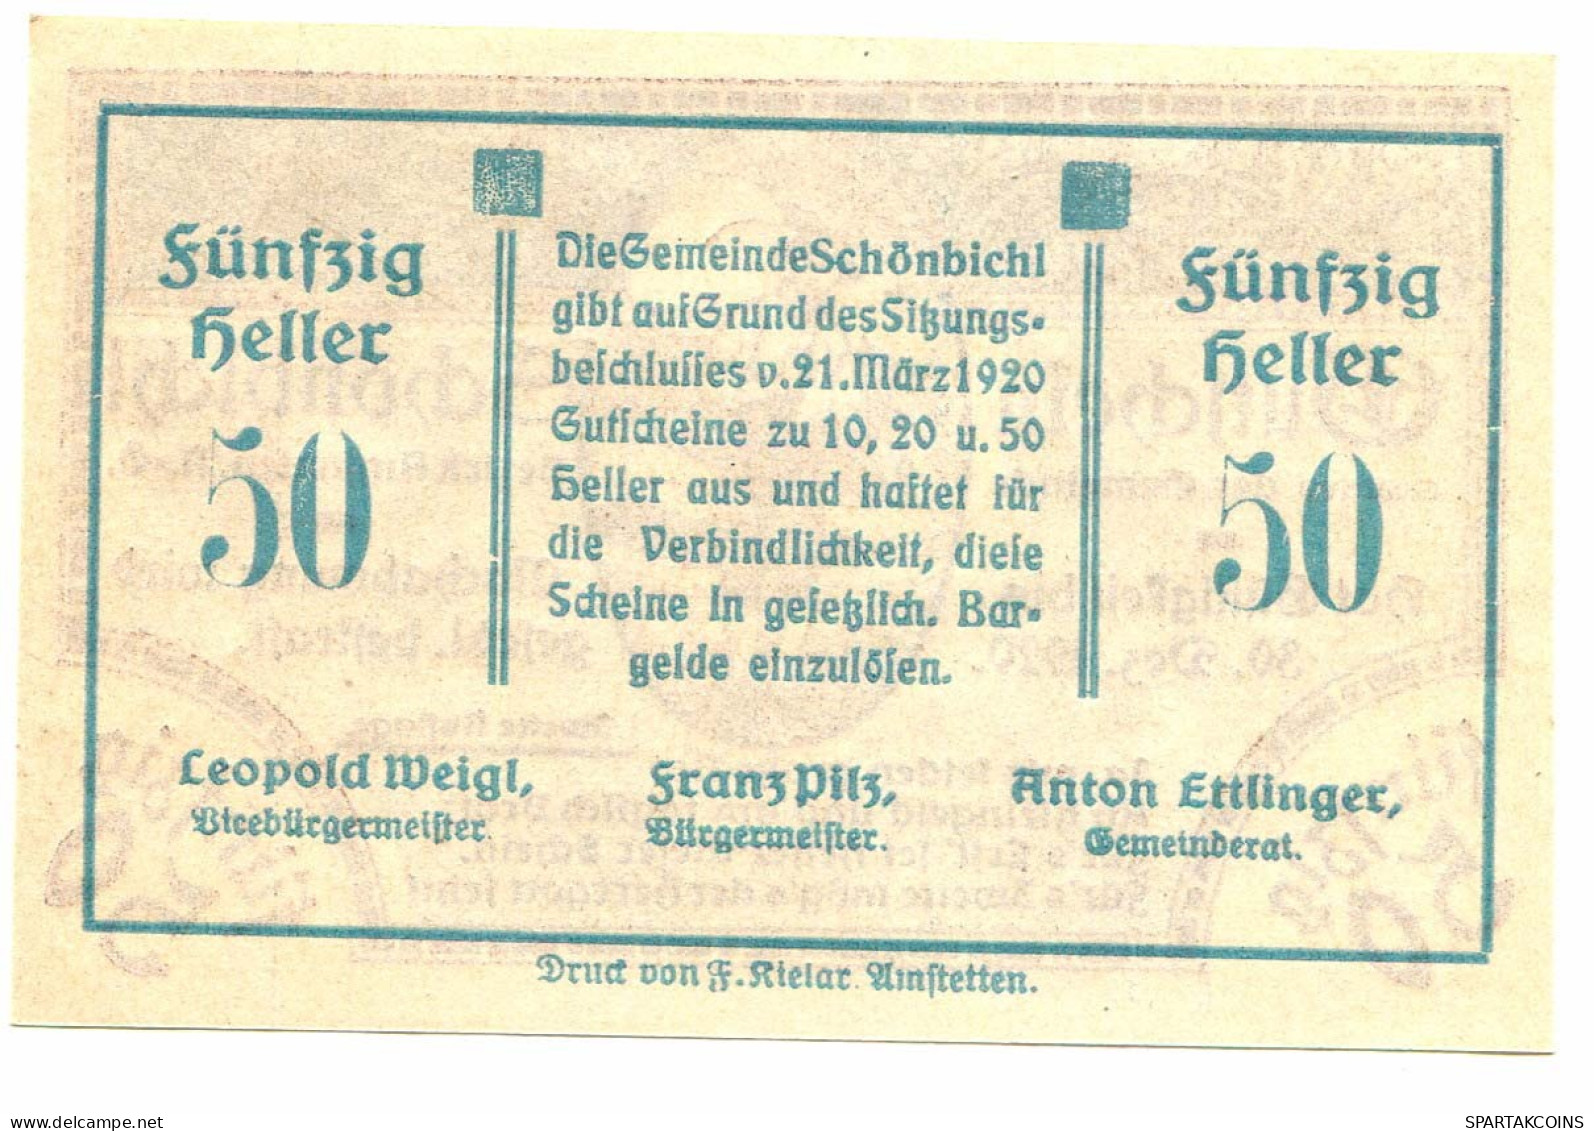 50 Heller 1920 SCHONBICHL Österreich UNC Notgeld Papiergeld Banknote #P10366 - [11] Local Banknote Issues